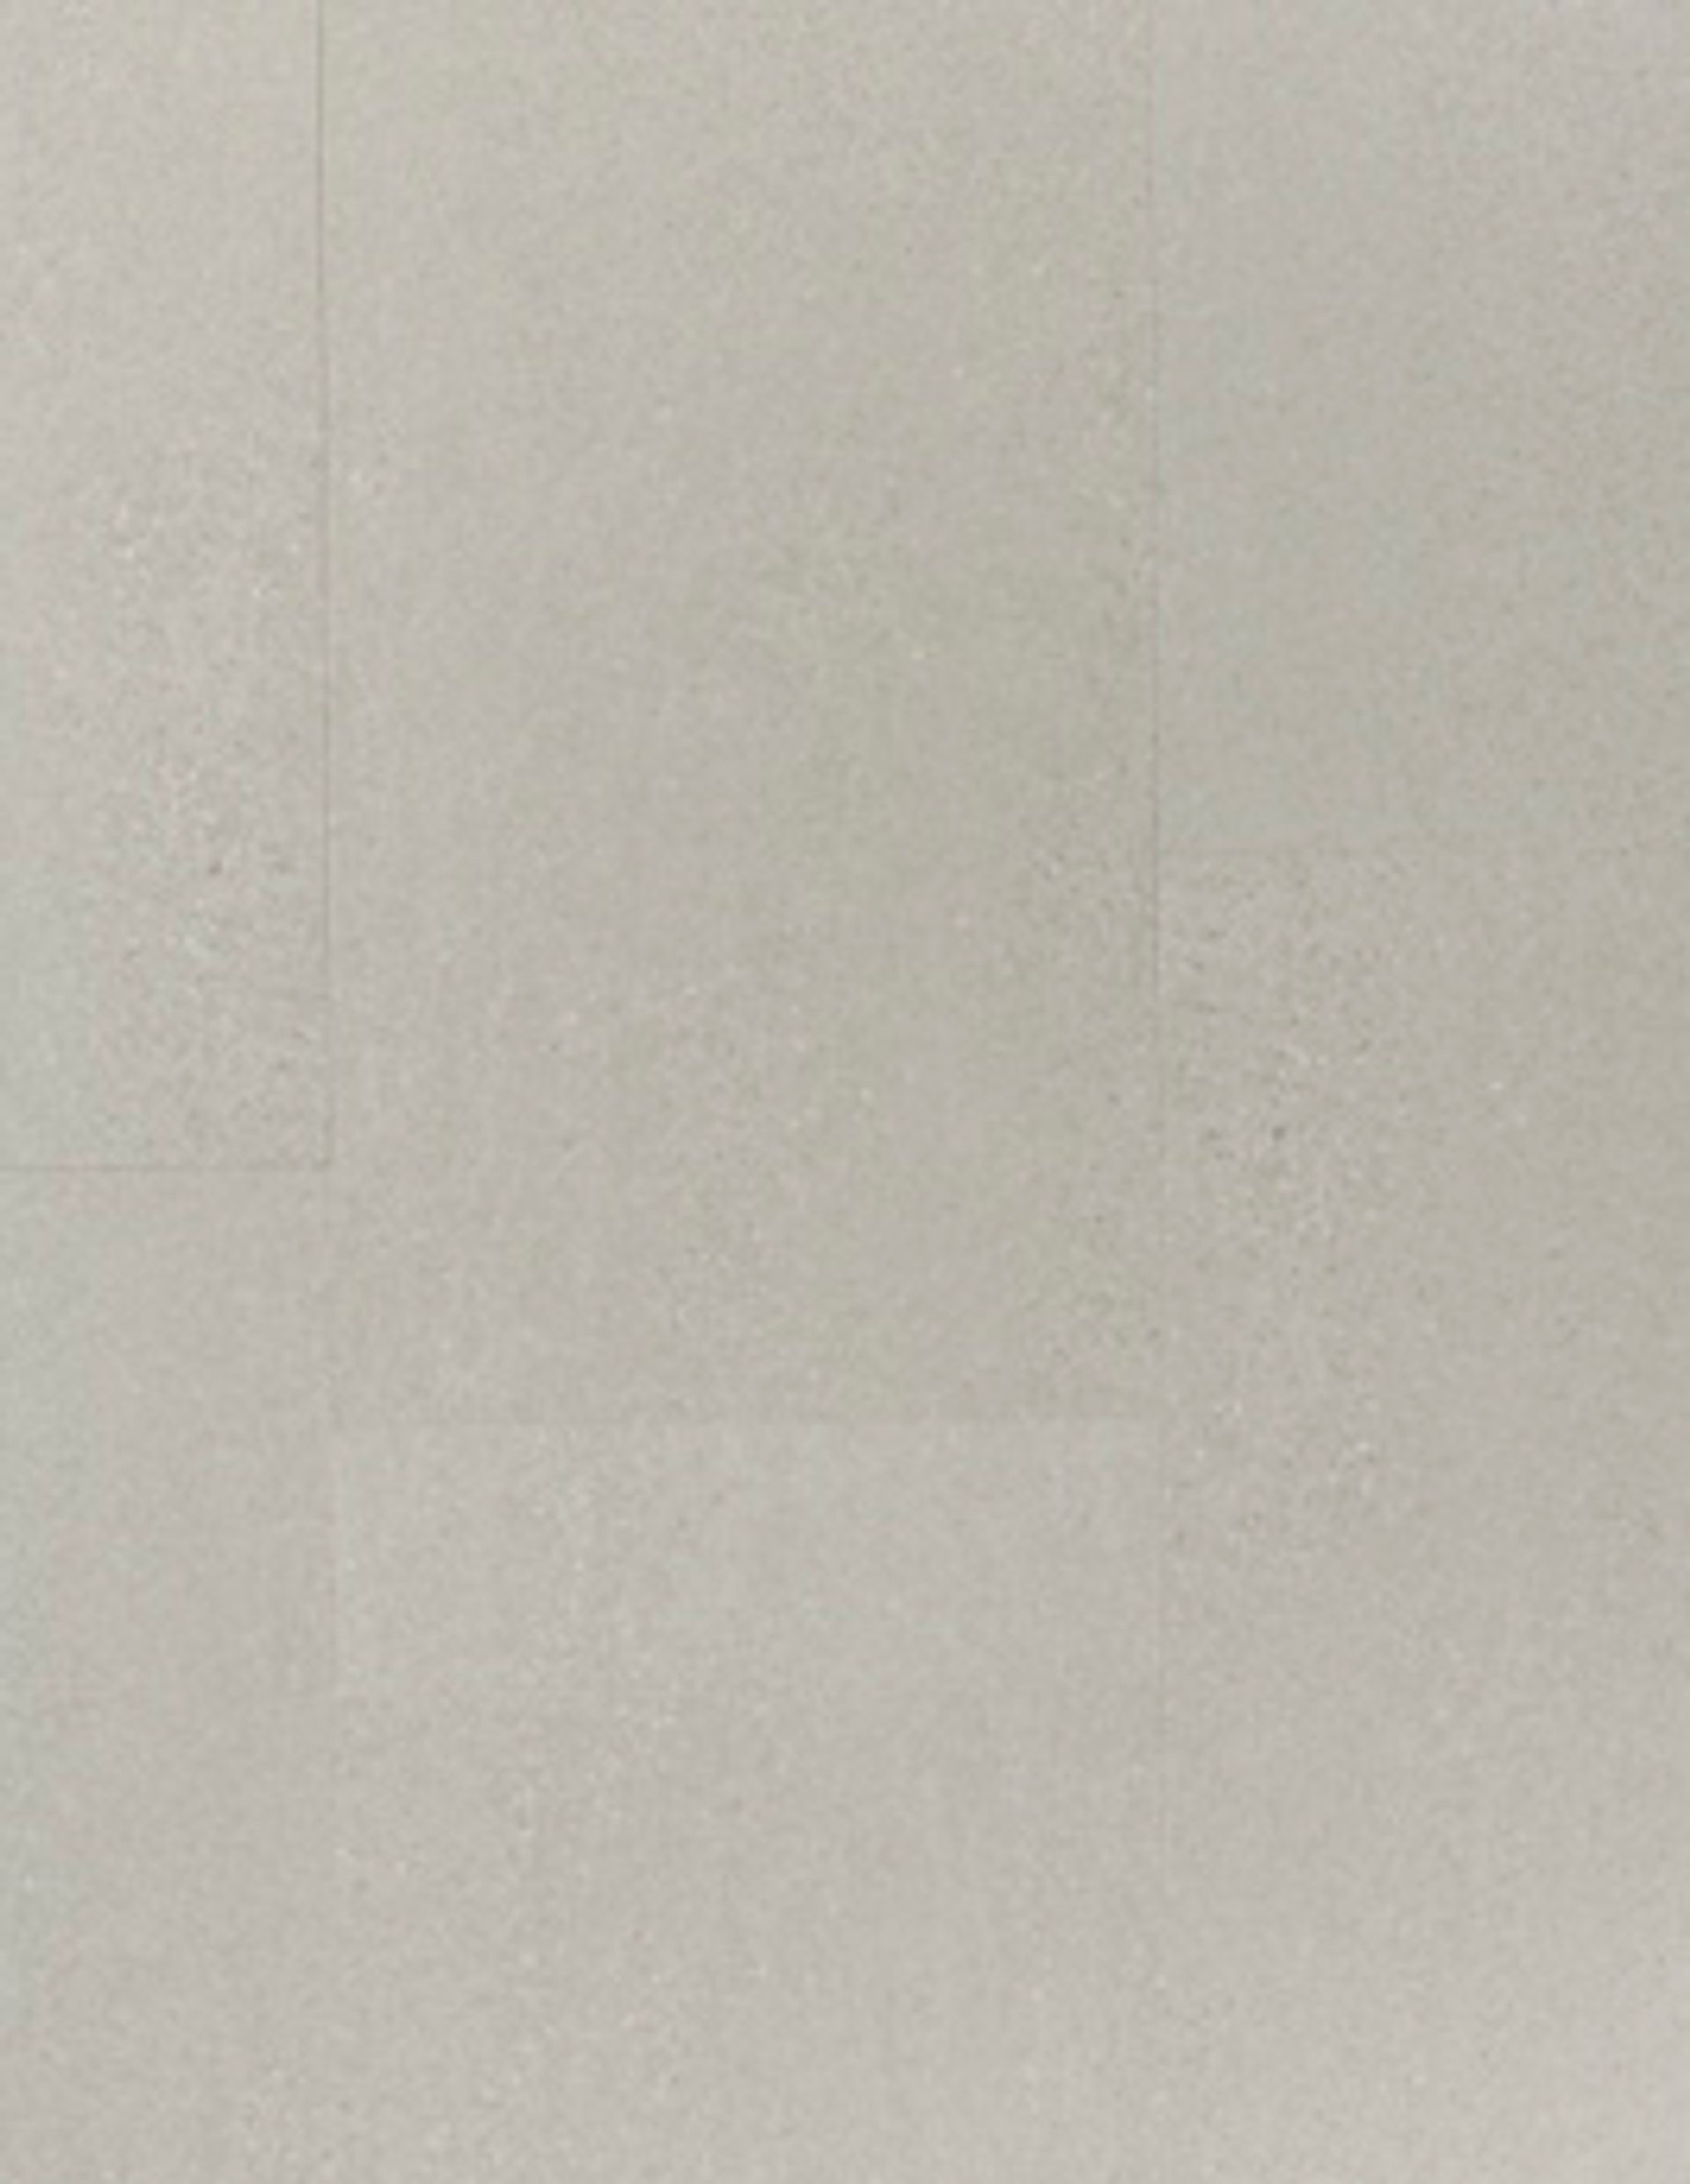 Sol vinyle EASYTREND SUPERMATT DALLE , Béton gris foncé, dalle 40.60 x 81.20 cm